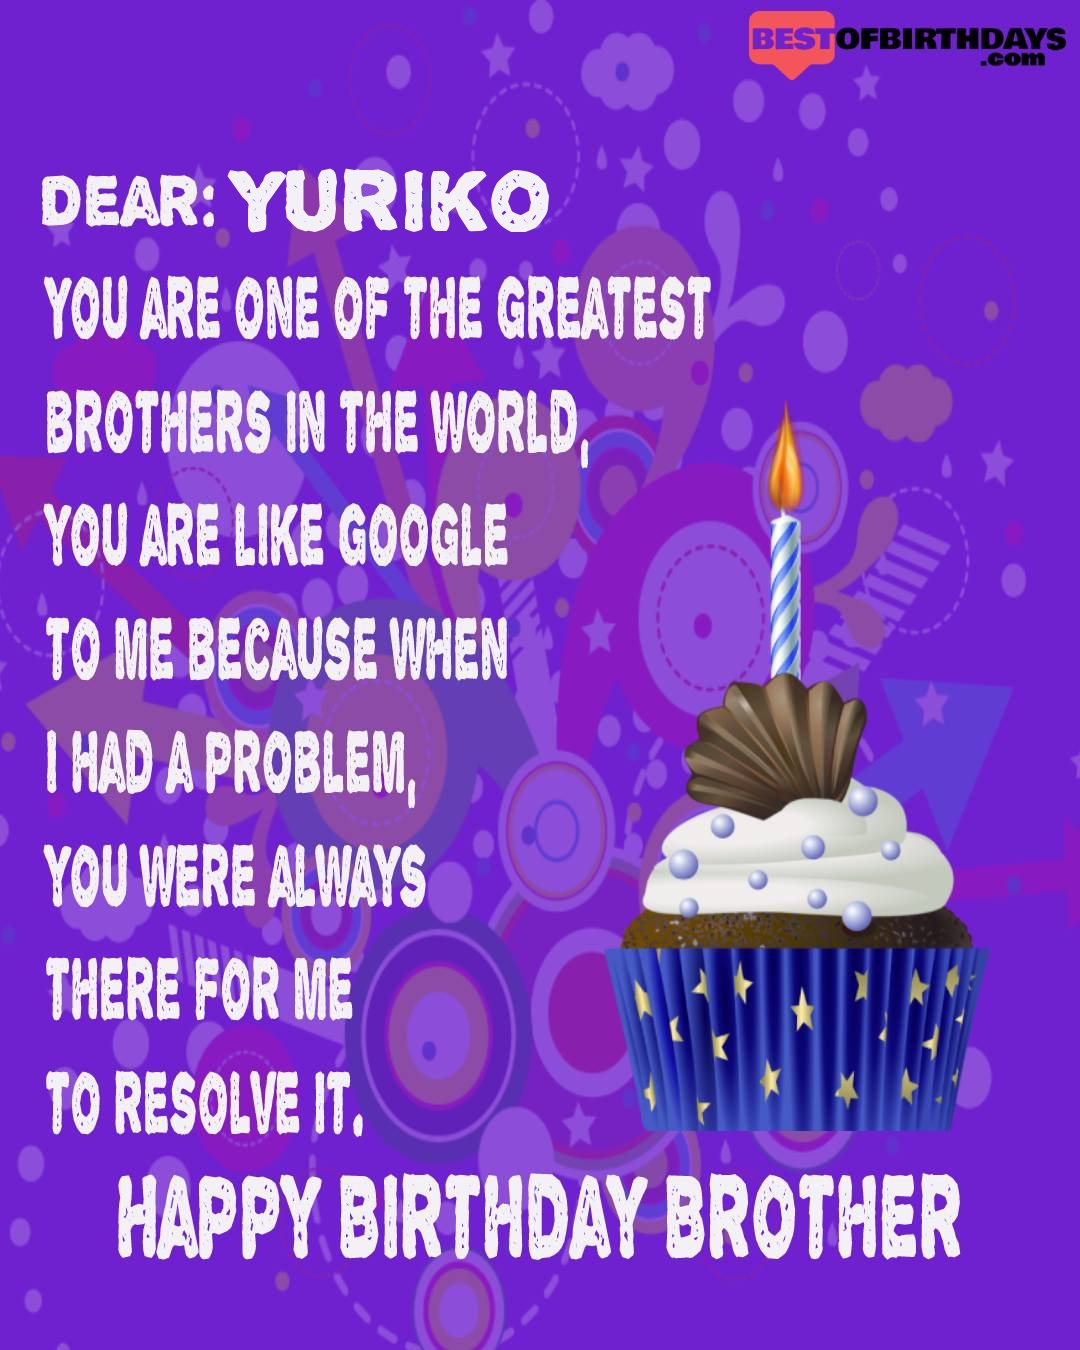 Happy birthday yuriko bhai brother bro